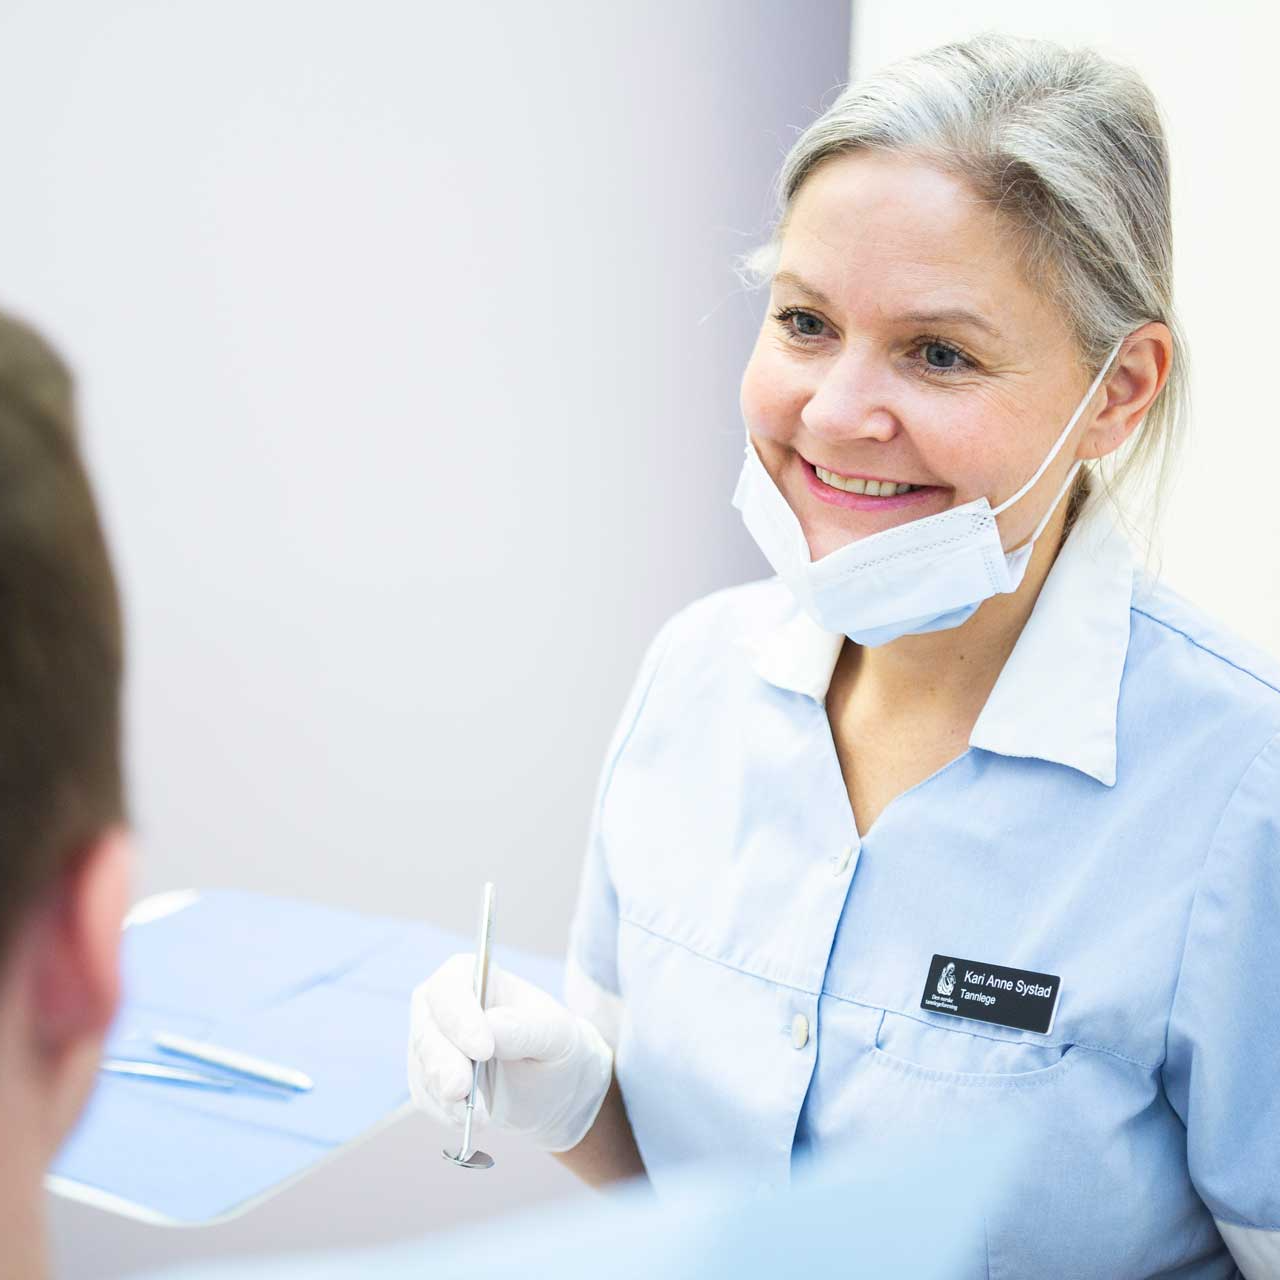 Tannlege Kari Anne Systad smiler til pasient